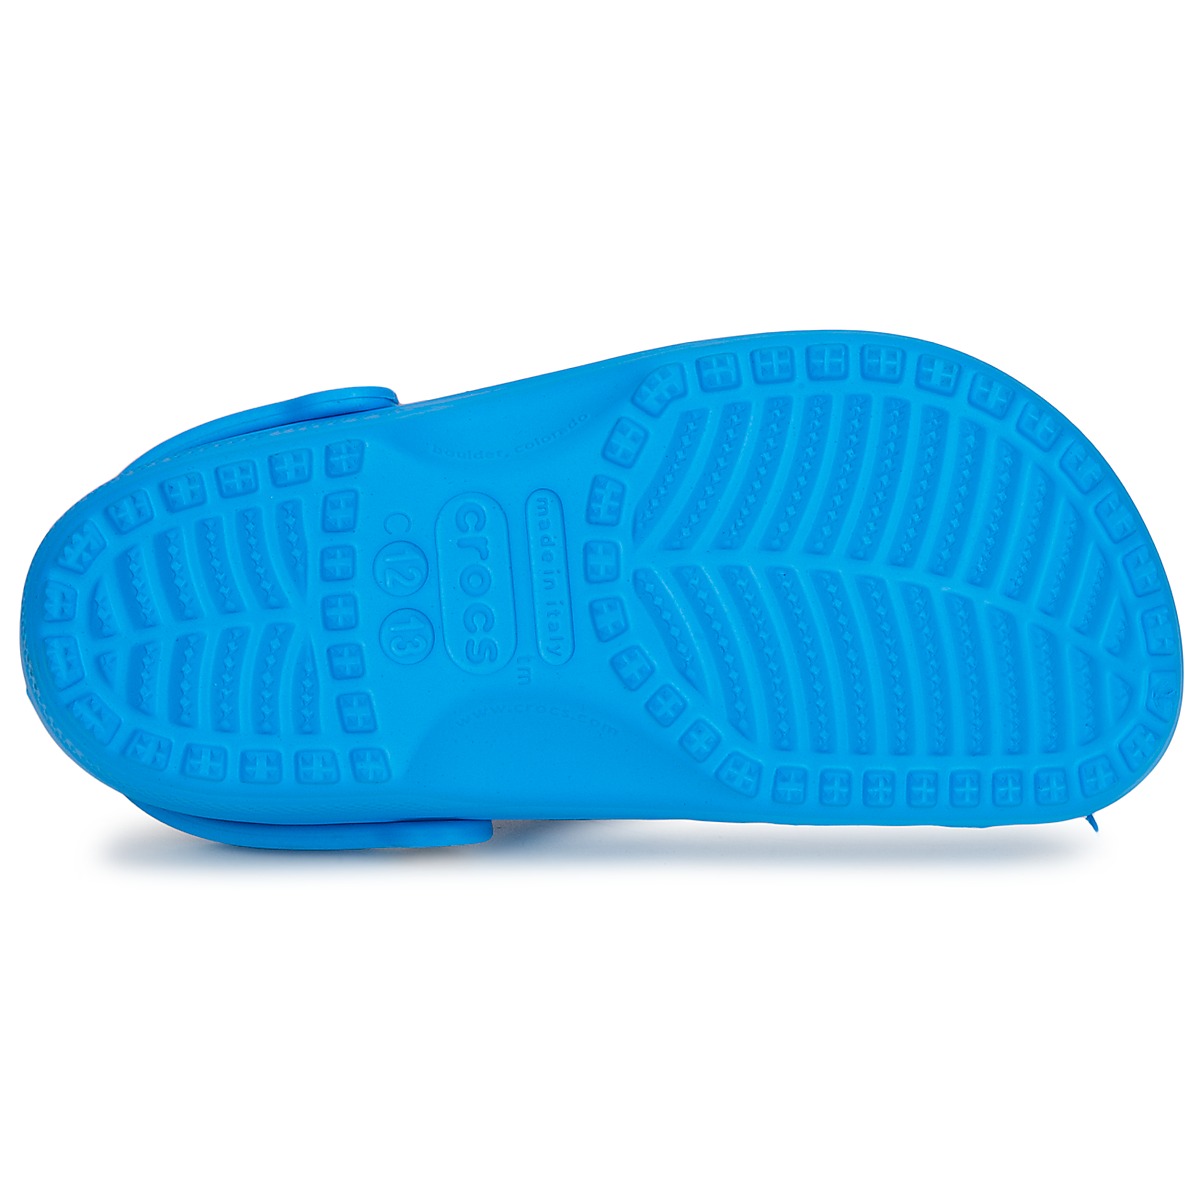 Crocs Bleu CLASSIC CLOG KIDS frdpme3n